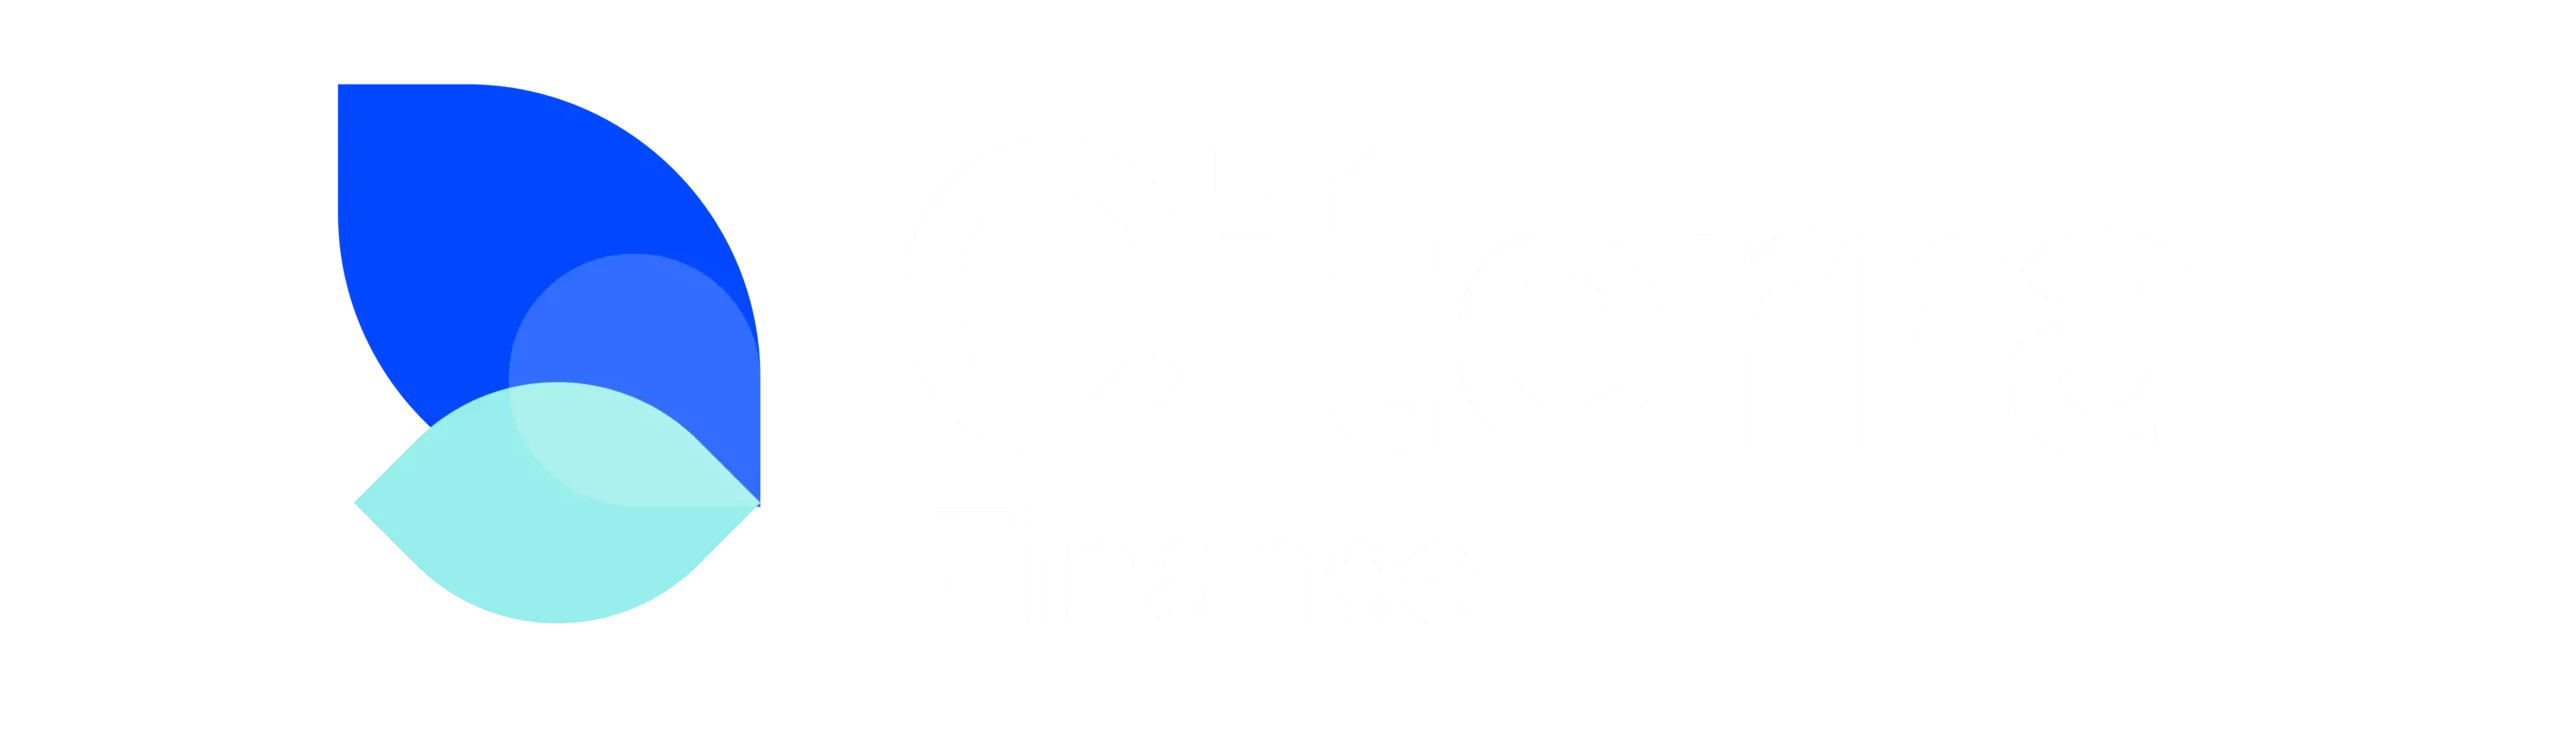 Citerra Finance Medical Financing Logo with Simple Leaf